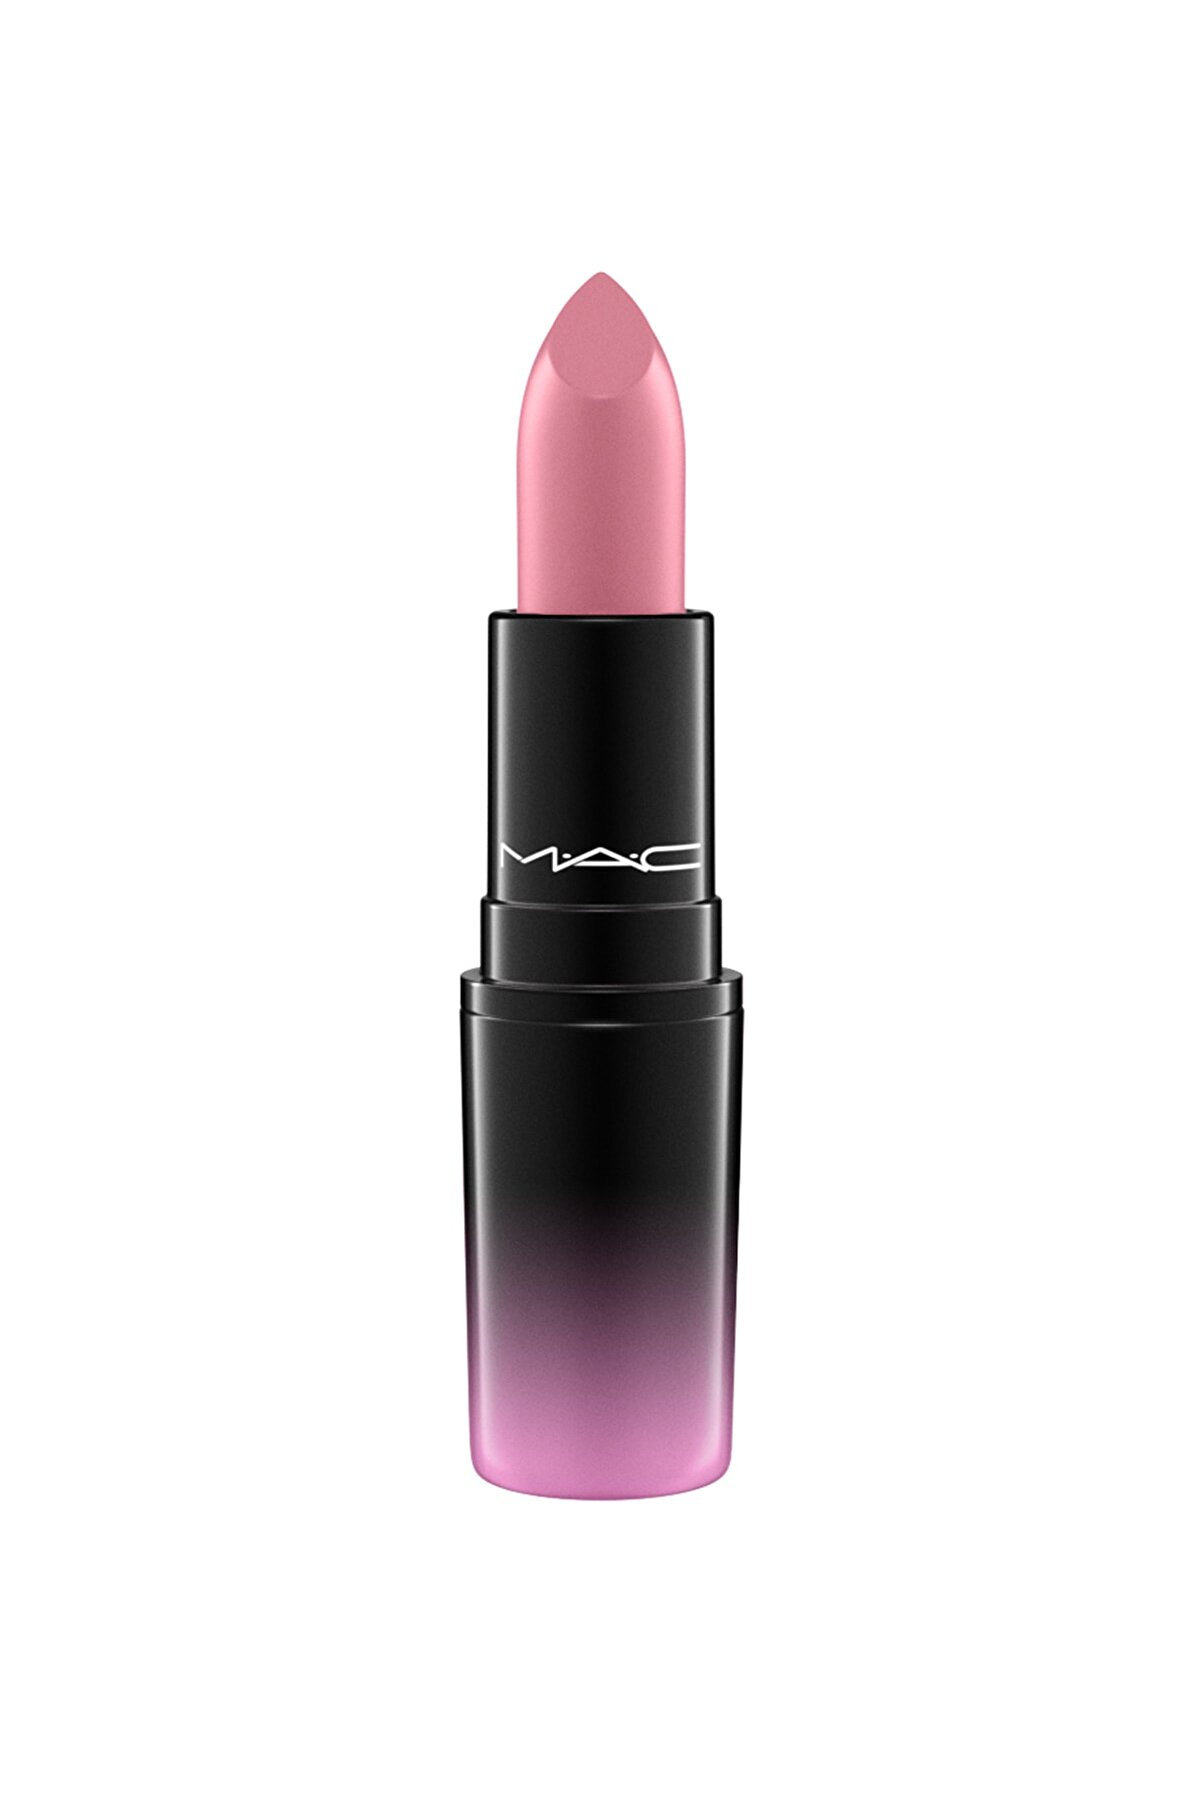 Mac Ruj - Love Me Lipstick Pure Nonchalance 3 g 773602541652